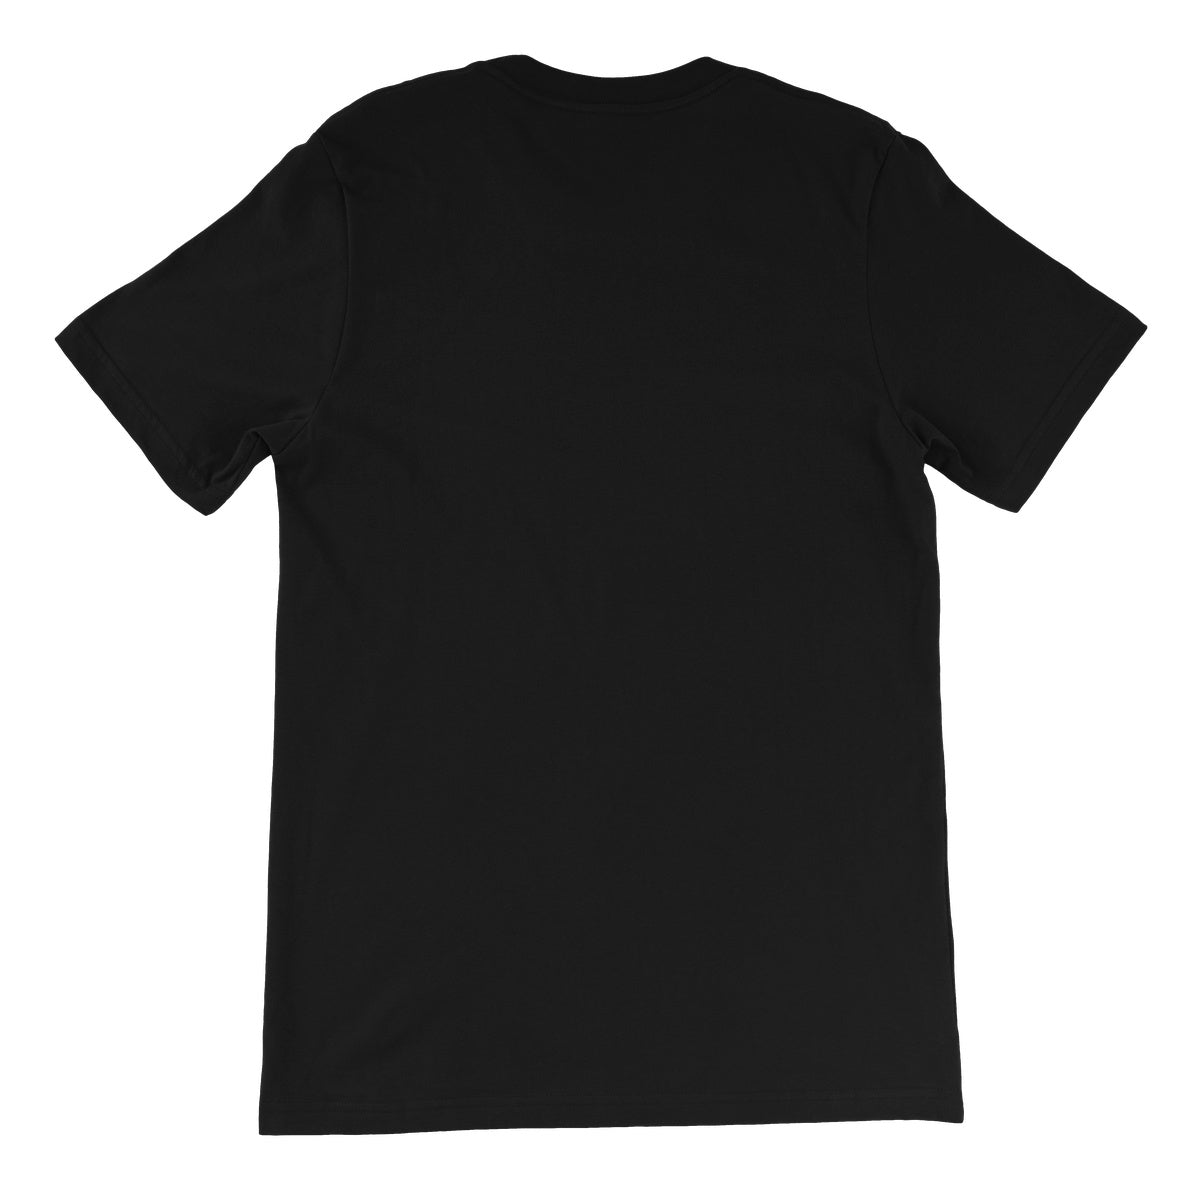 Let's Wrestle Retro '81 Unisex Short Sleeve T-Shirt